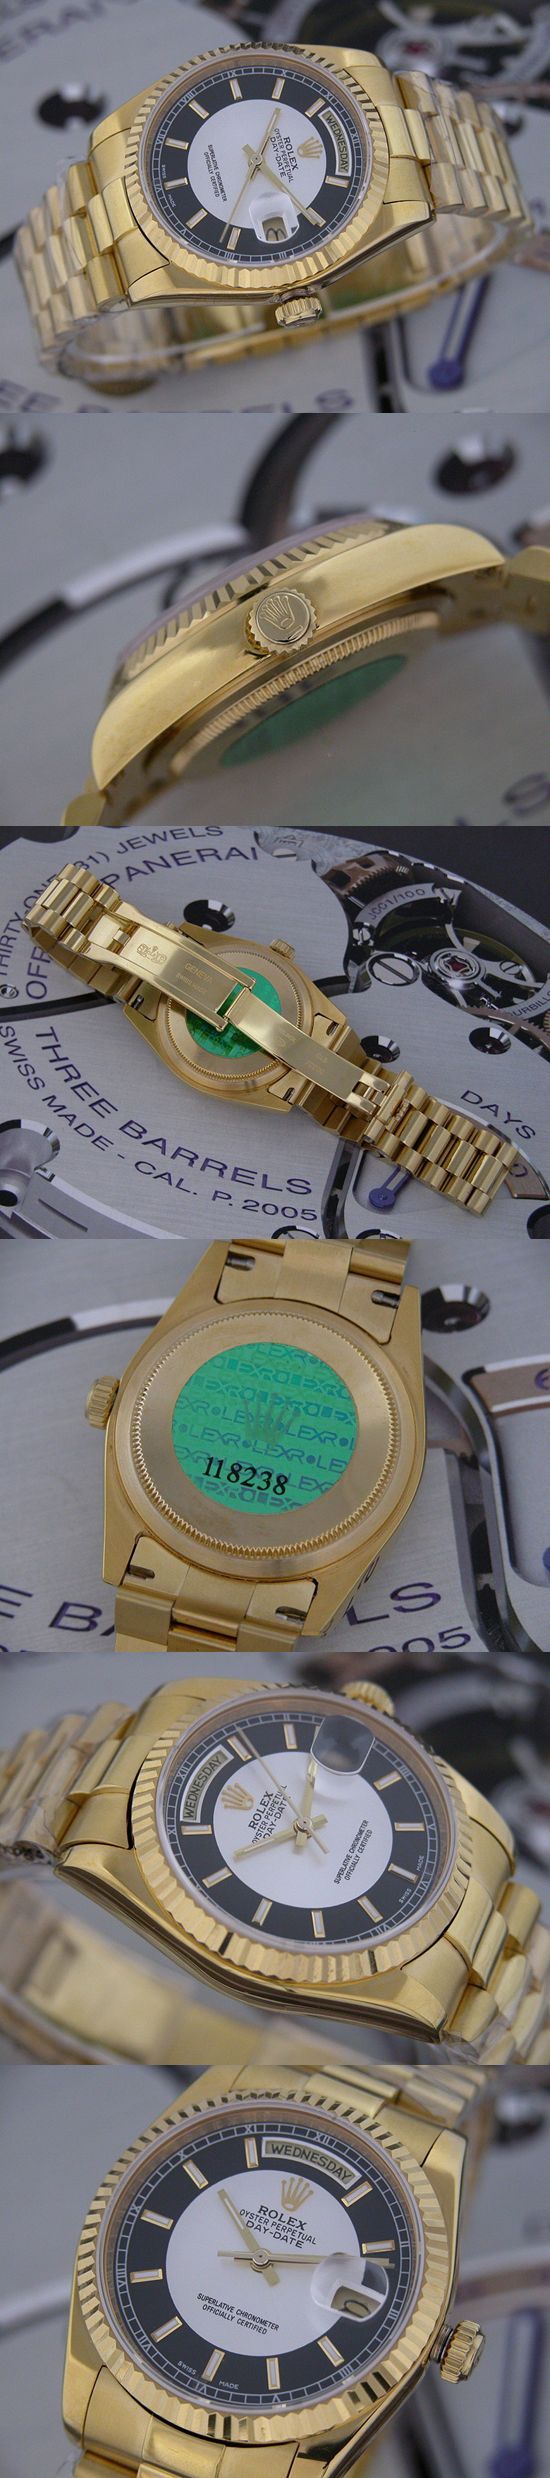 おしゃれなブランド時計がロレックス-デイデイト-ROLEX-118238-113-男性用を提供します.